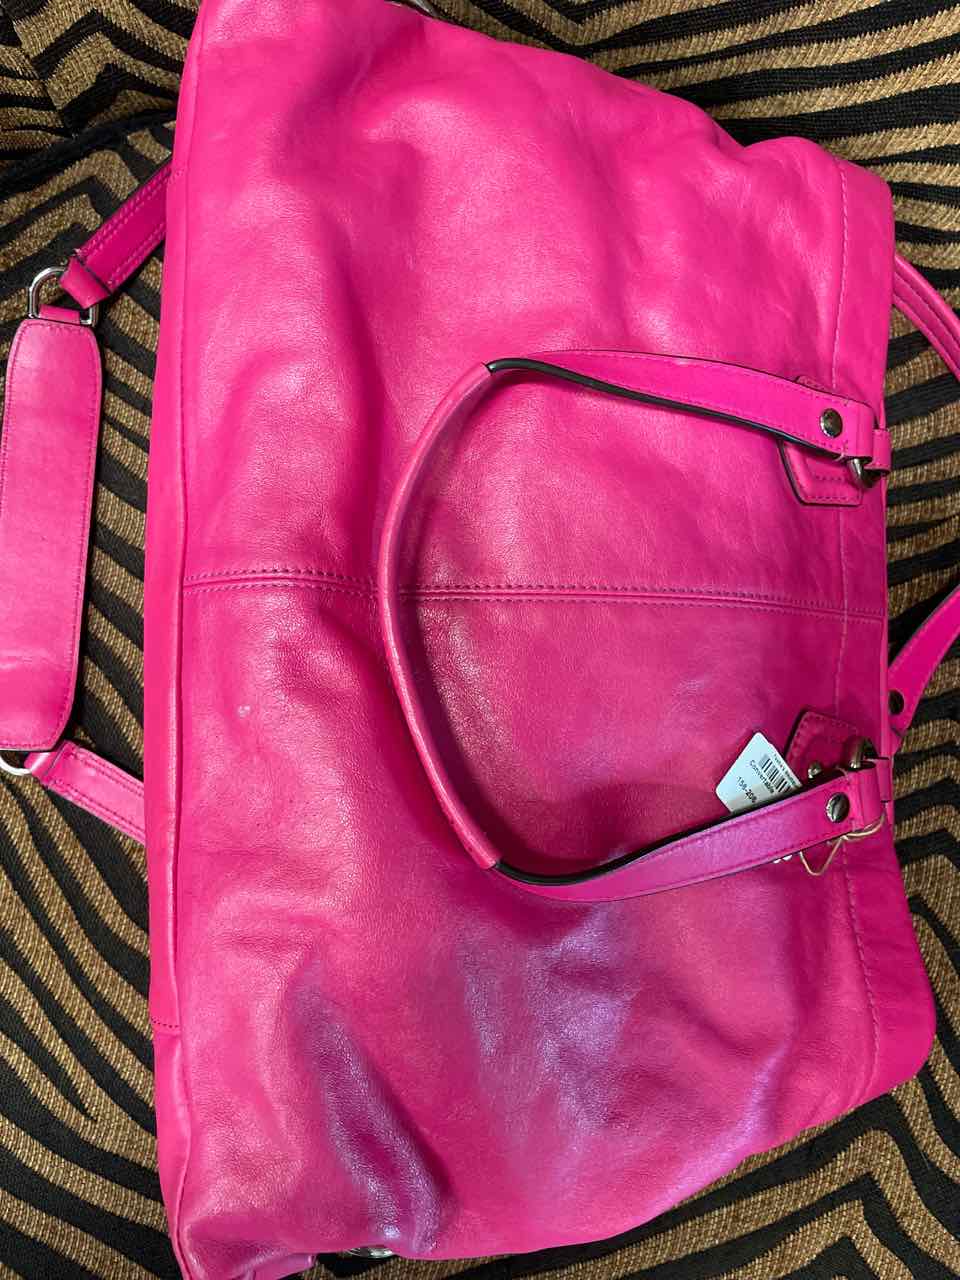 Purse  - Coach Convertable Bag